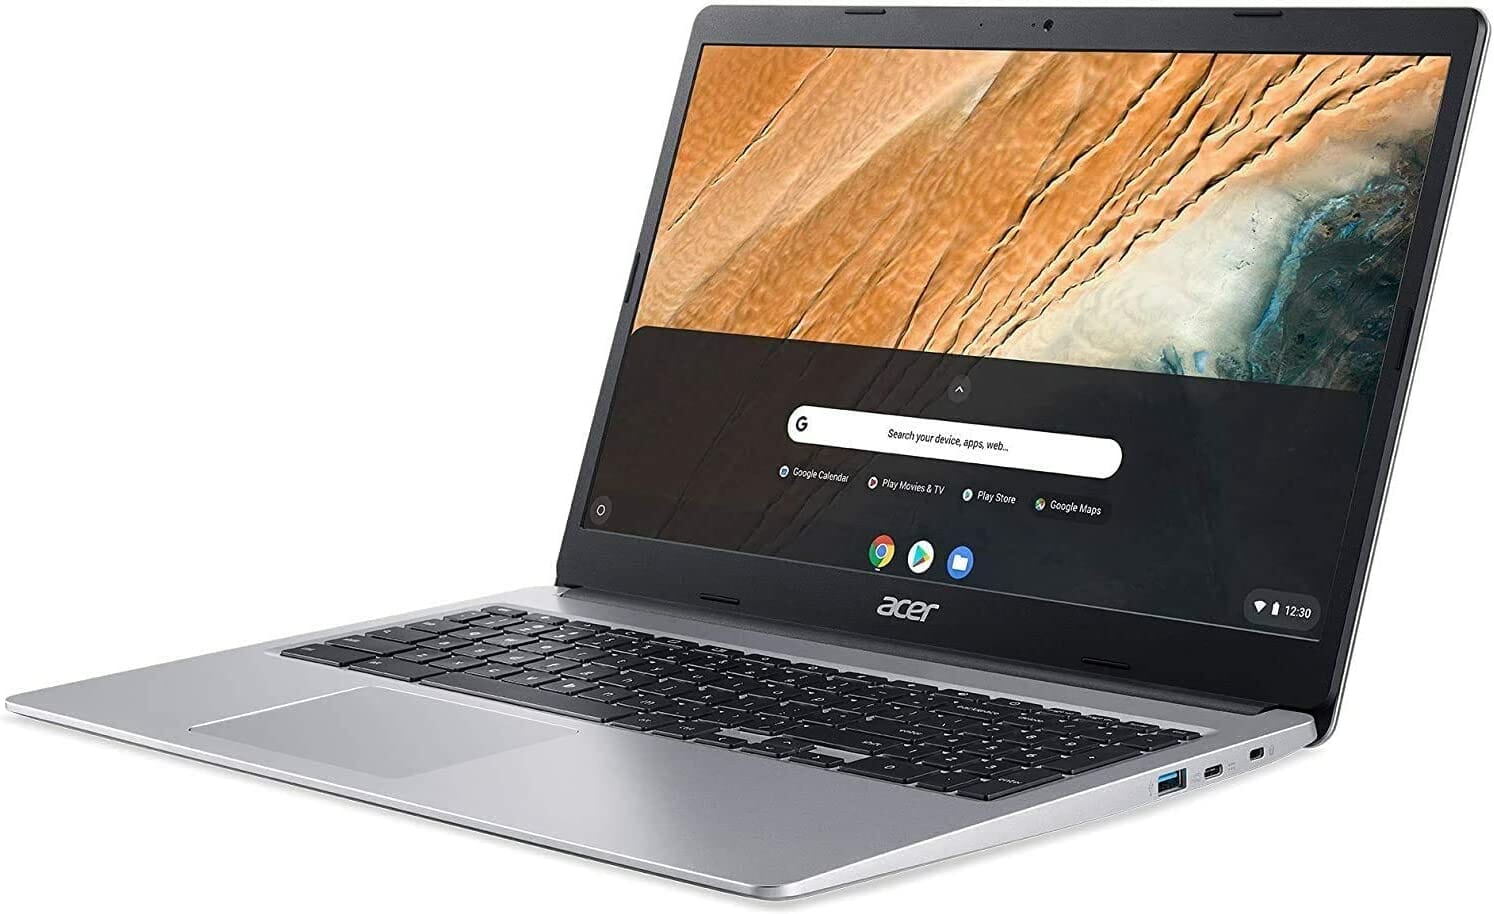 
2021 Flagship Acer Chromebook 15.6" FHD 1080p IPS Touchscreen Light Computer Laptop